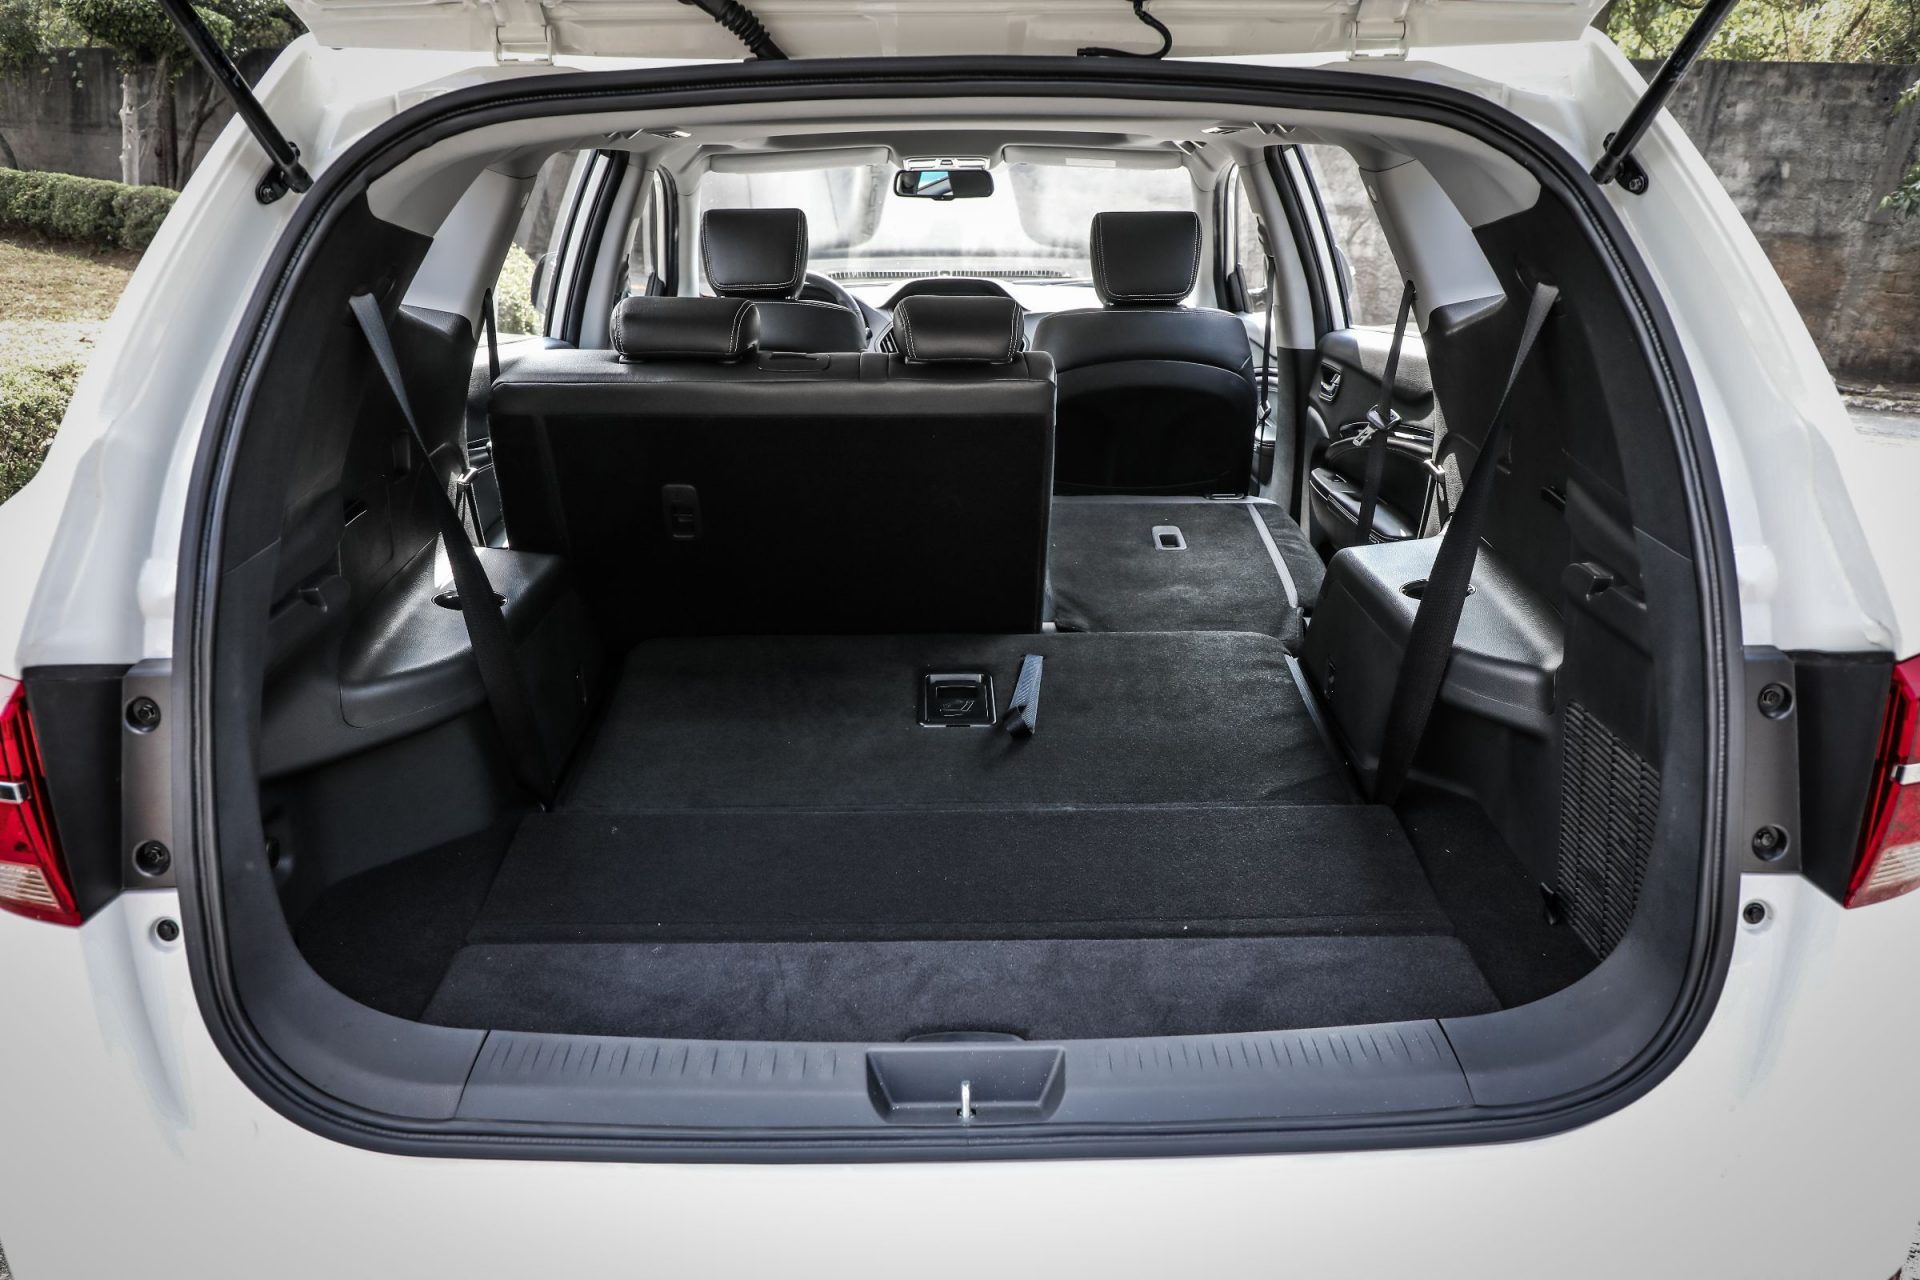 Lifan lançou o X80, com preço de R$ 129.777. SUV com porte entre os modelos médios e grandes tem espaço para sete ocupantes e motor turbo.